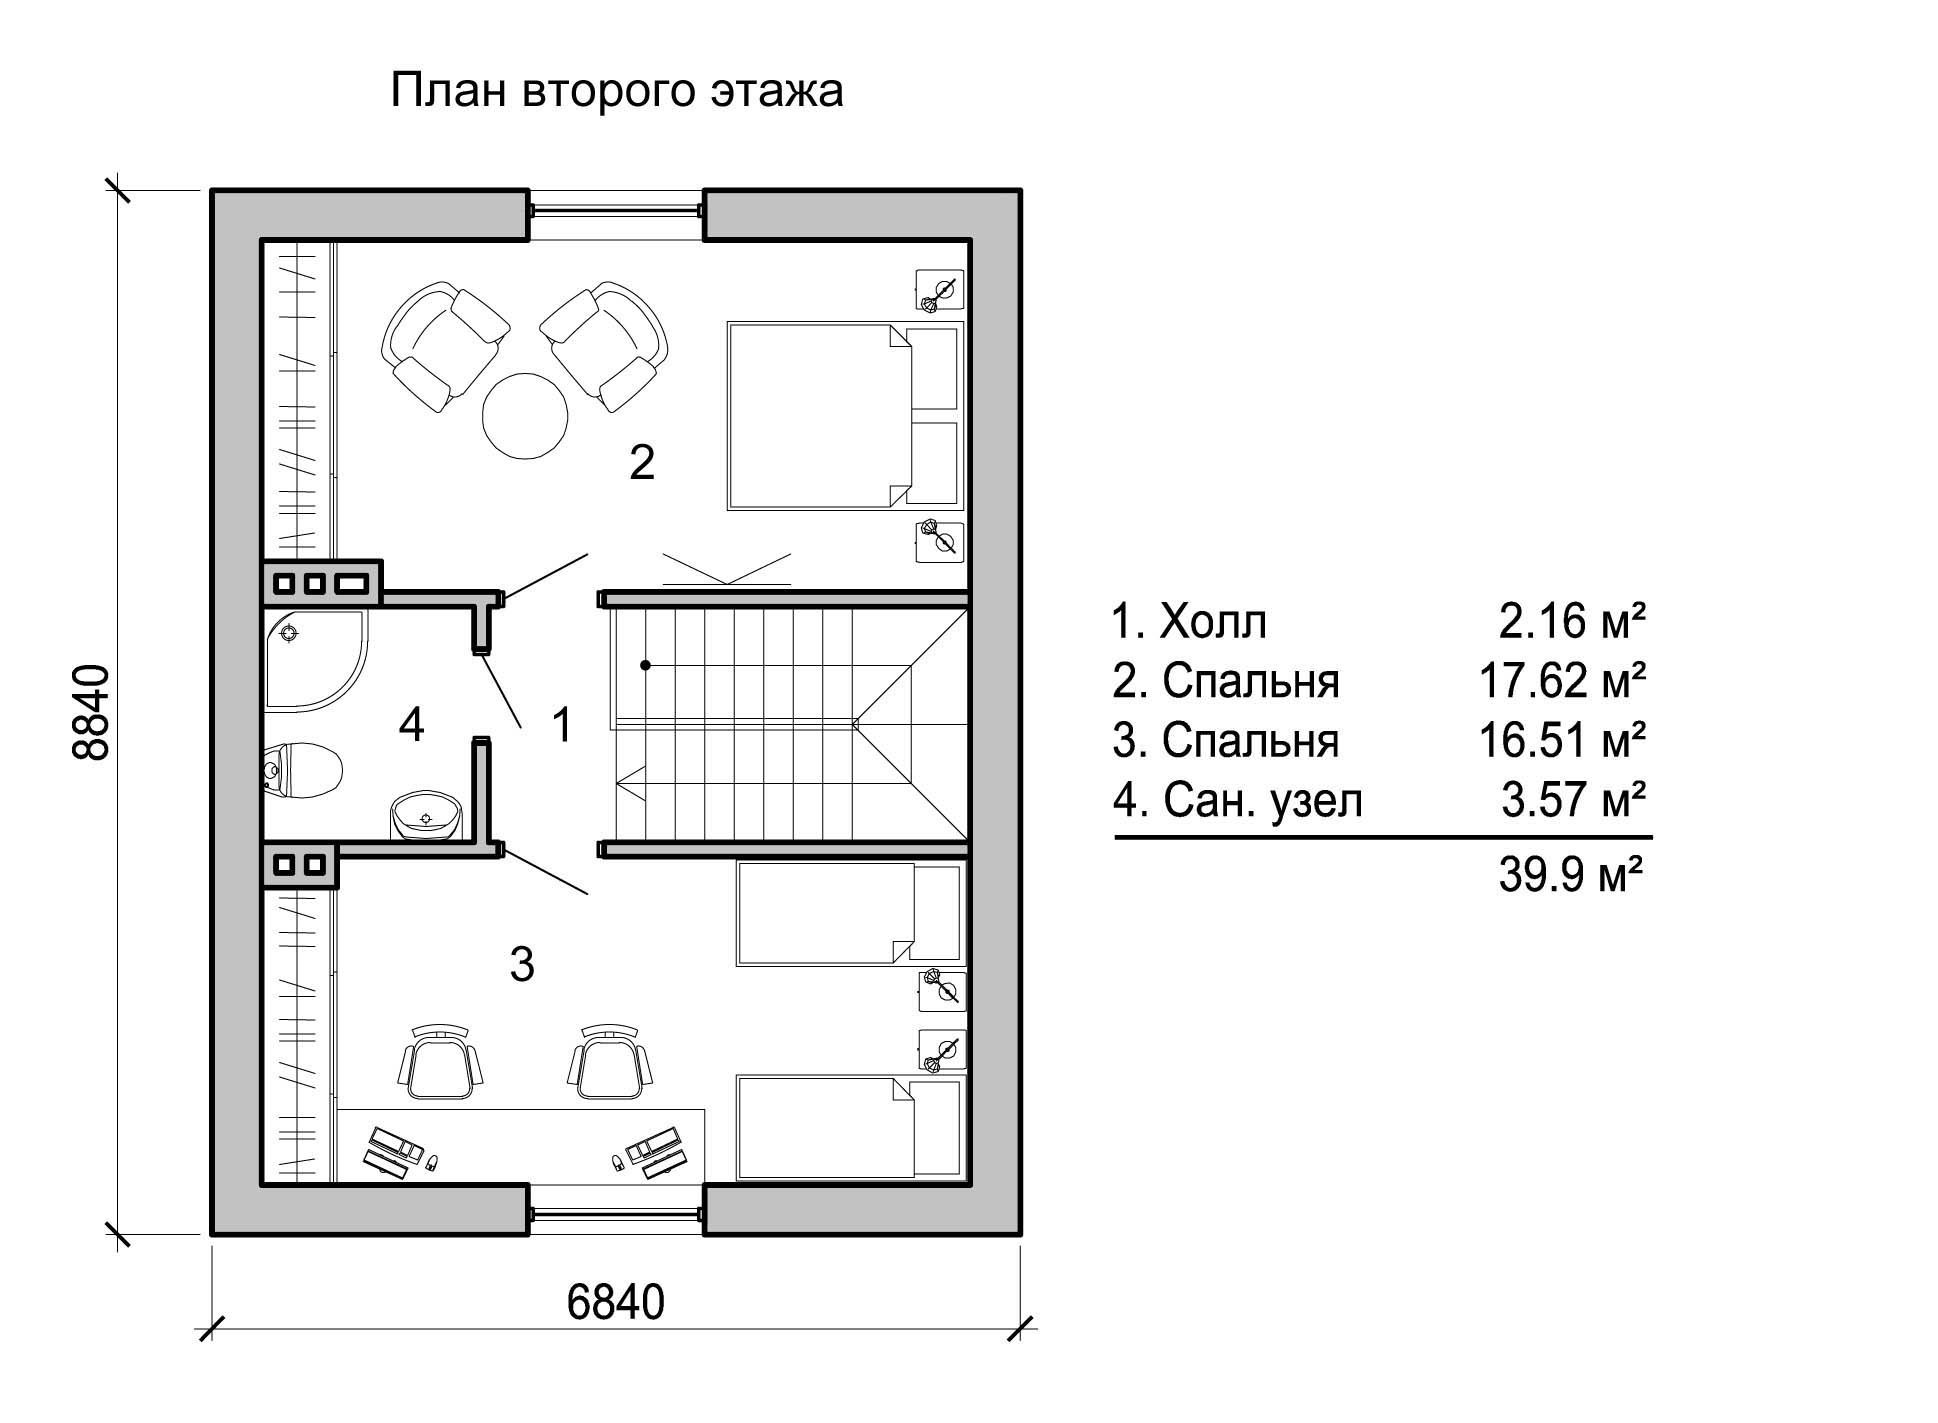 Проект кухни с санузлом. Планировка санузла и котельной в 20 м.кв. Планировка второго этажа с двумя спальнями. Планировка дома с 1 спальней и гостиной. Схемы планировки домов.